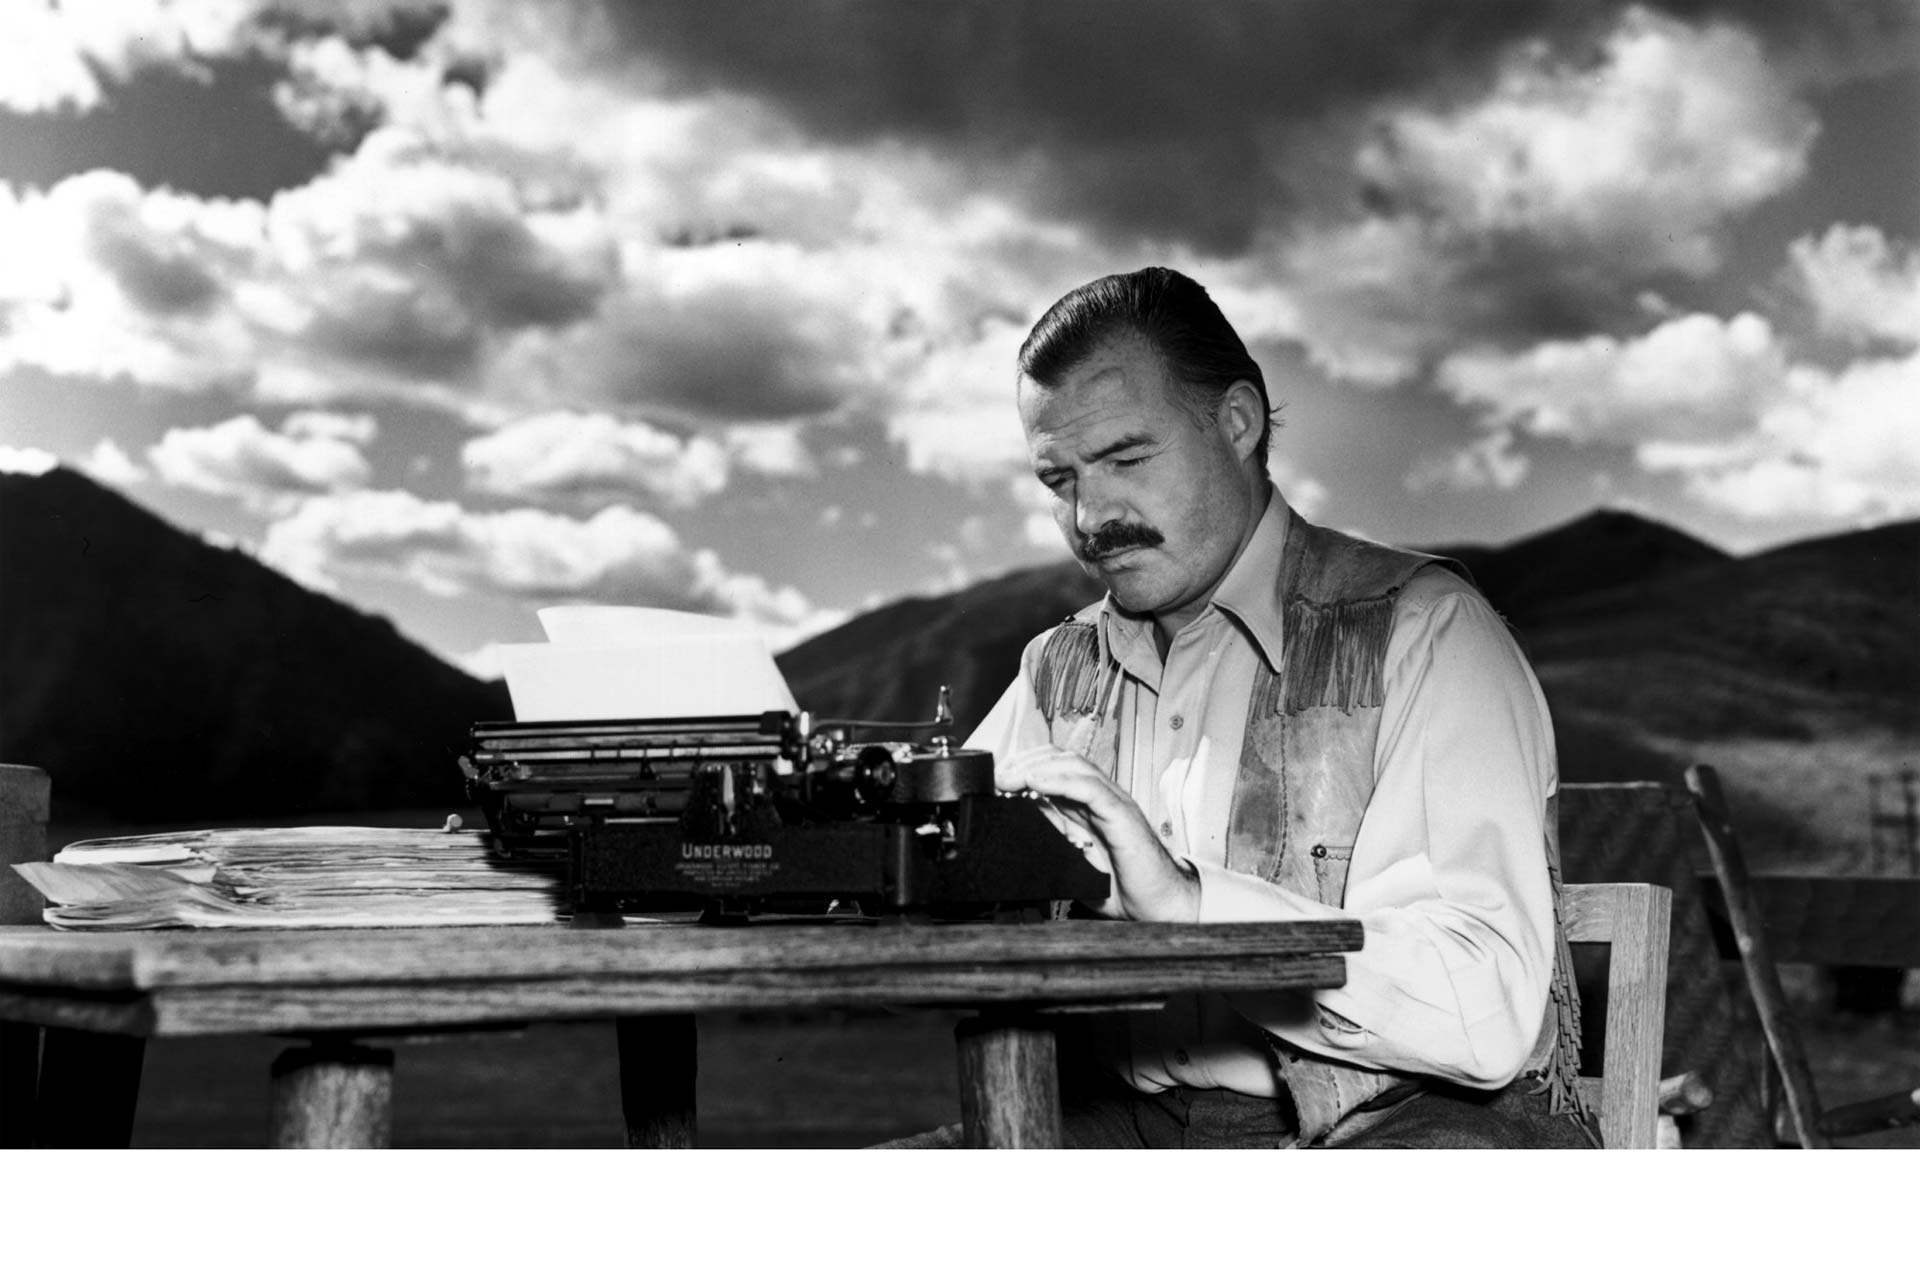 El célebre libro de Hemingway se ha convertido en bestseller tras los atentados sufridos en la capital francesa